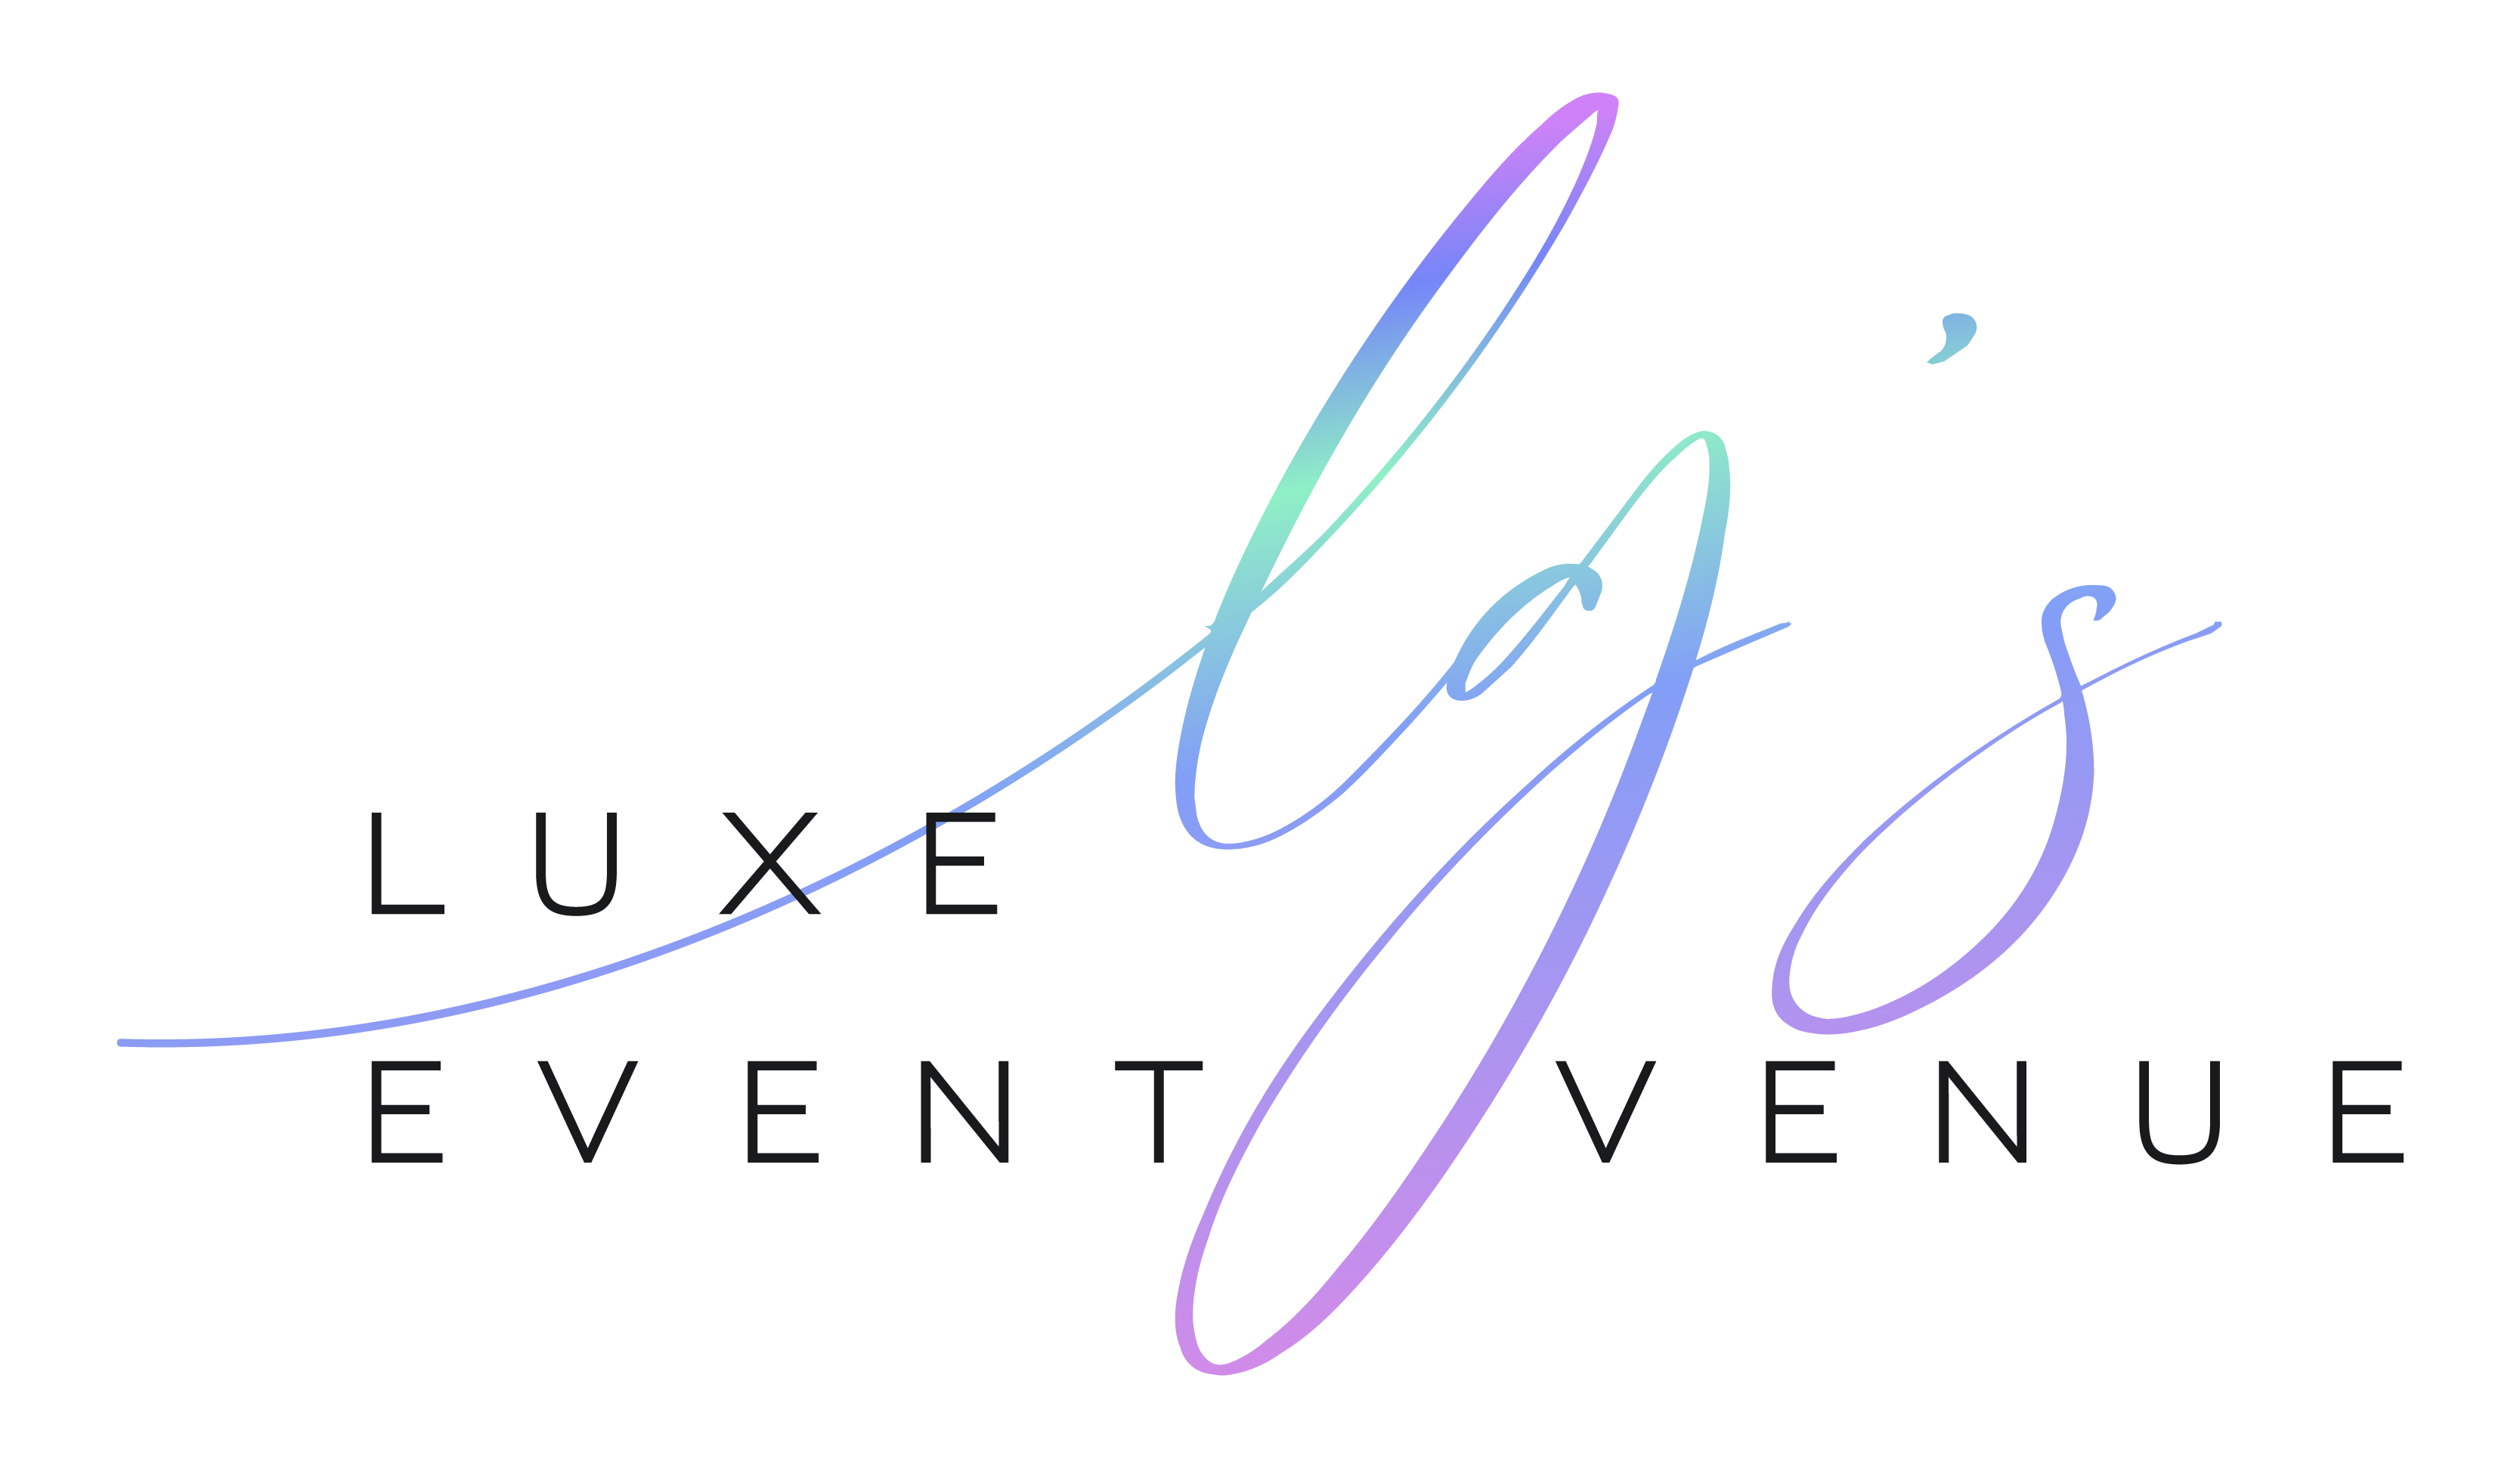 lg's event venue logo